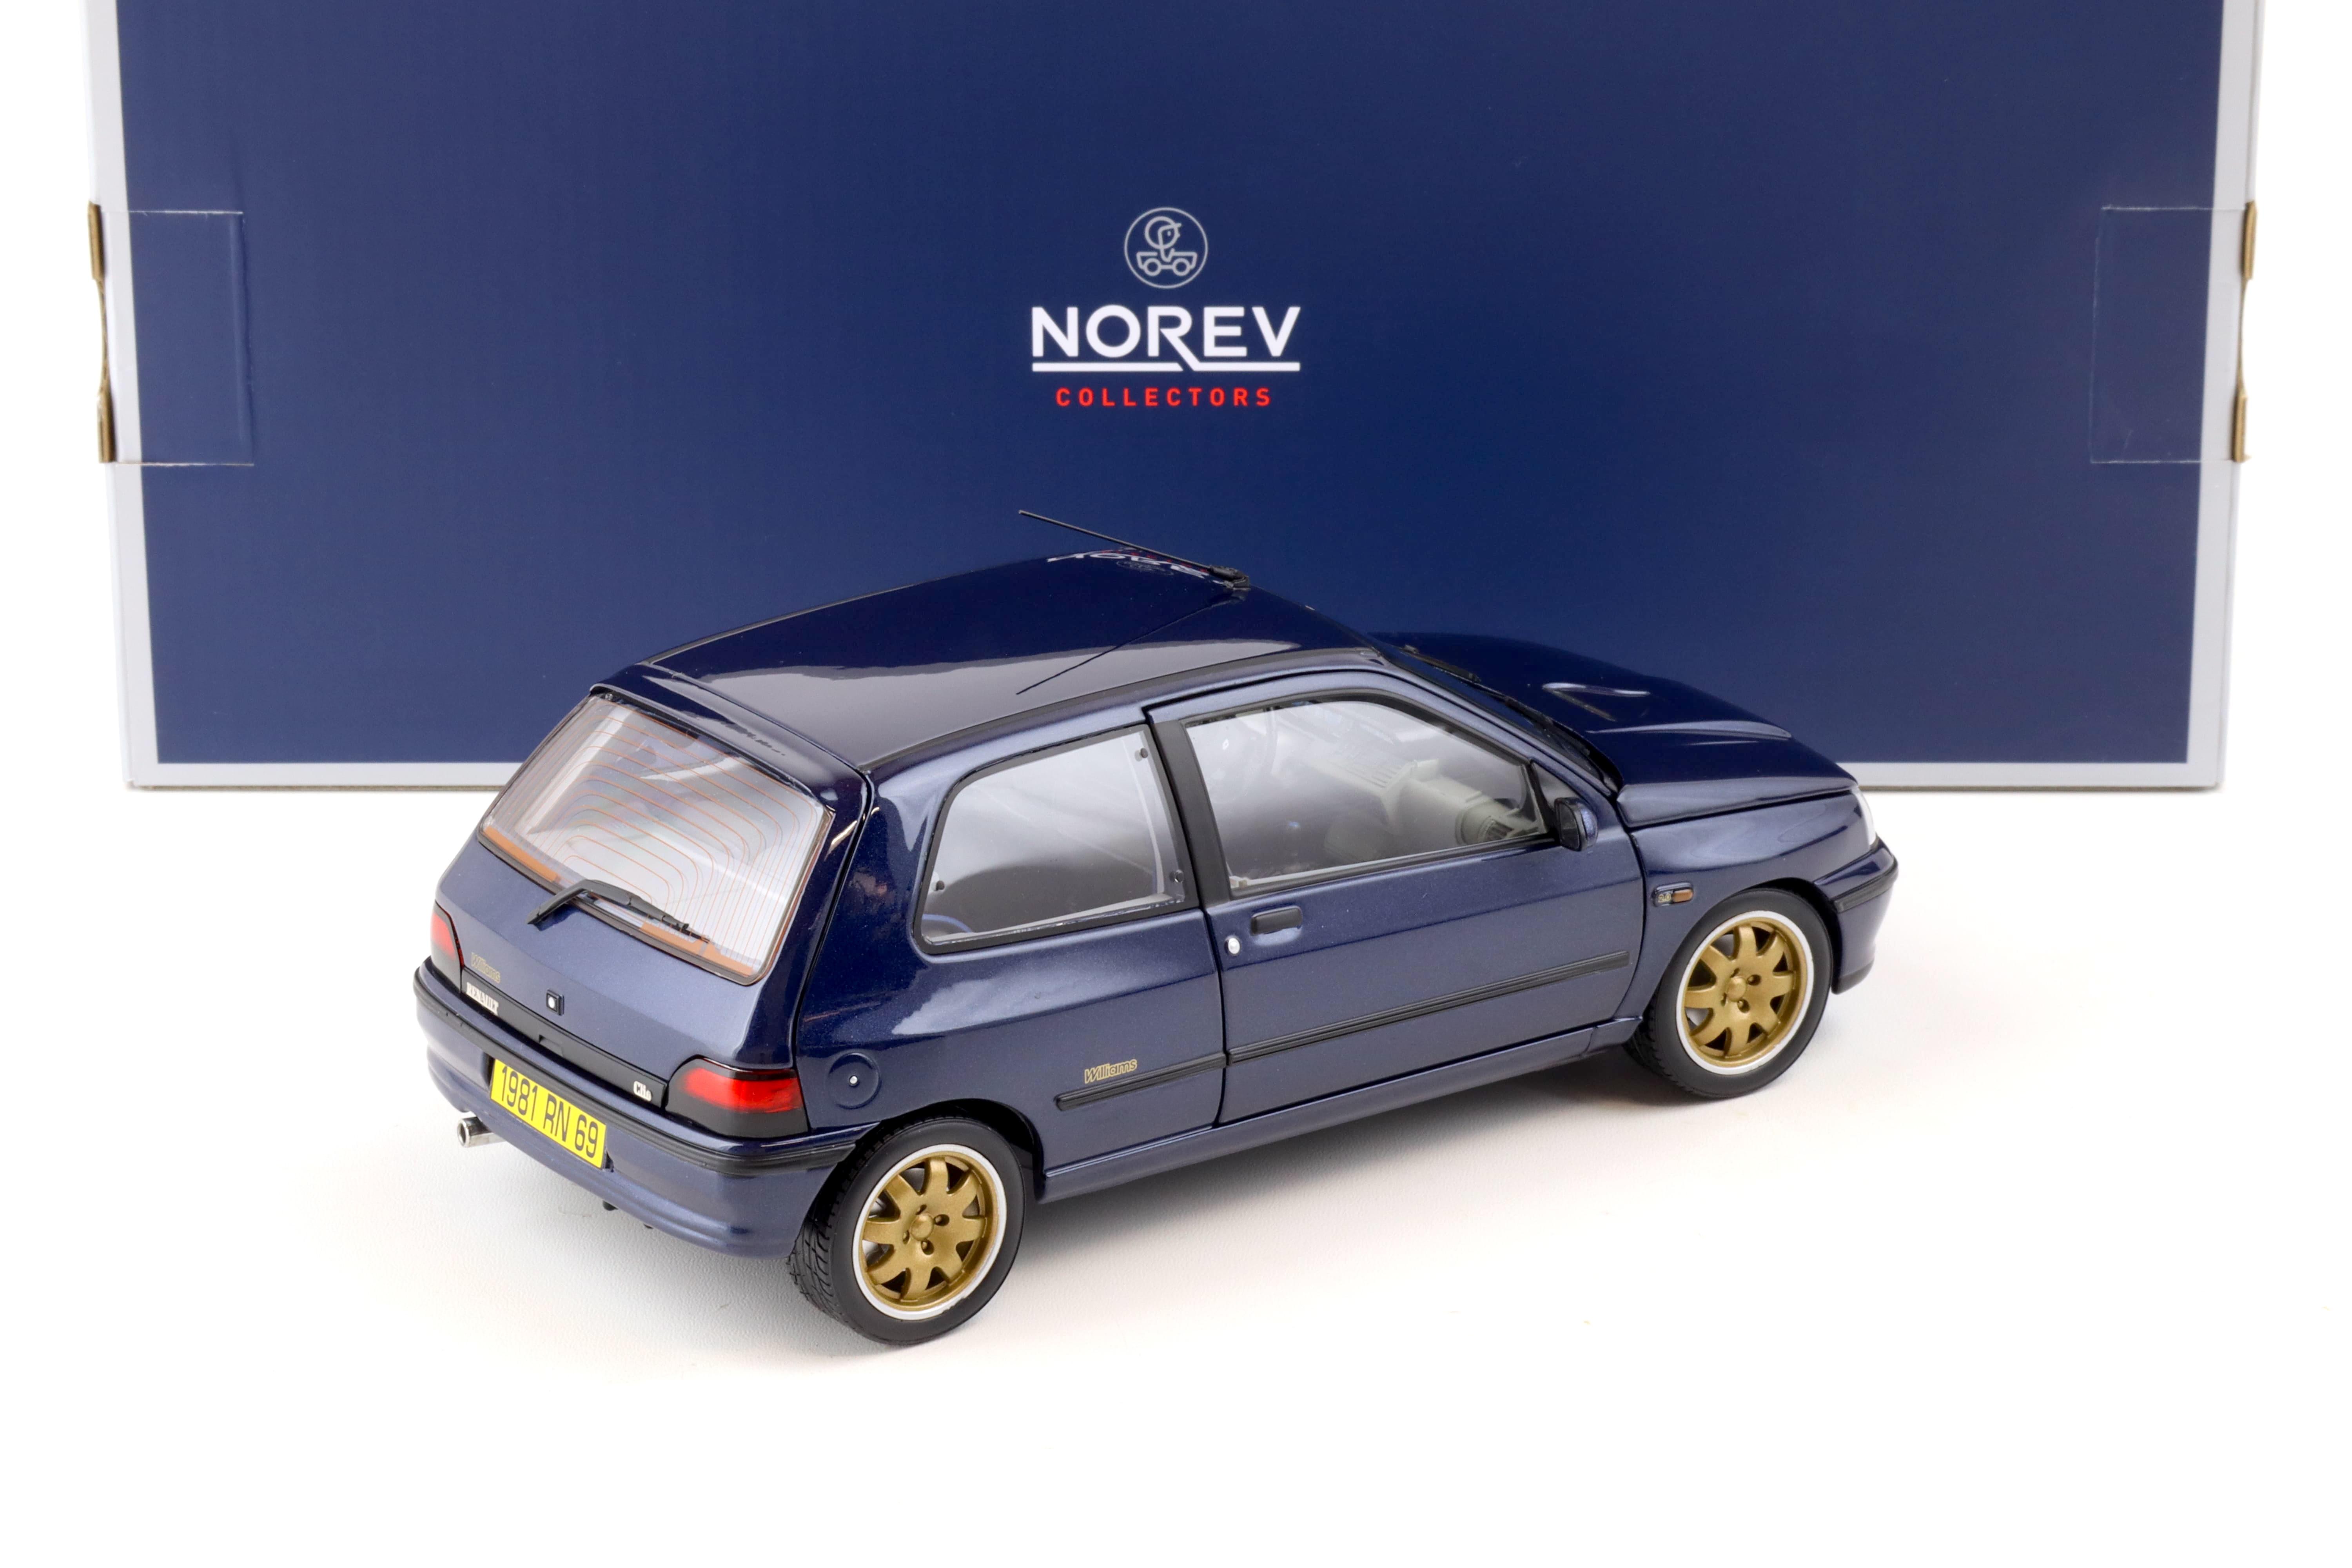 1:18 Norev Renault Clio Williams 1993 blue metallic 185230